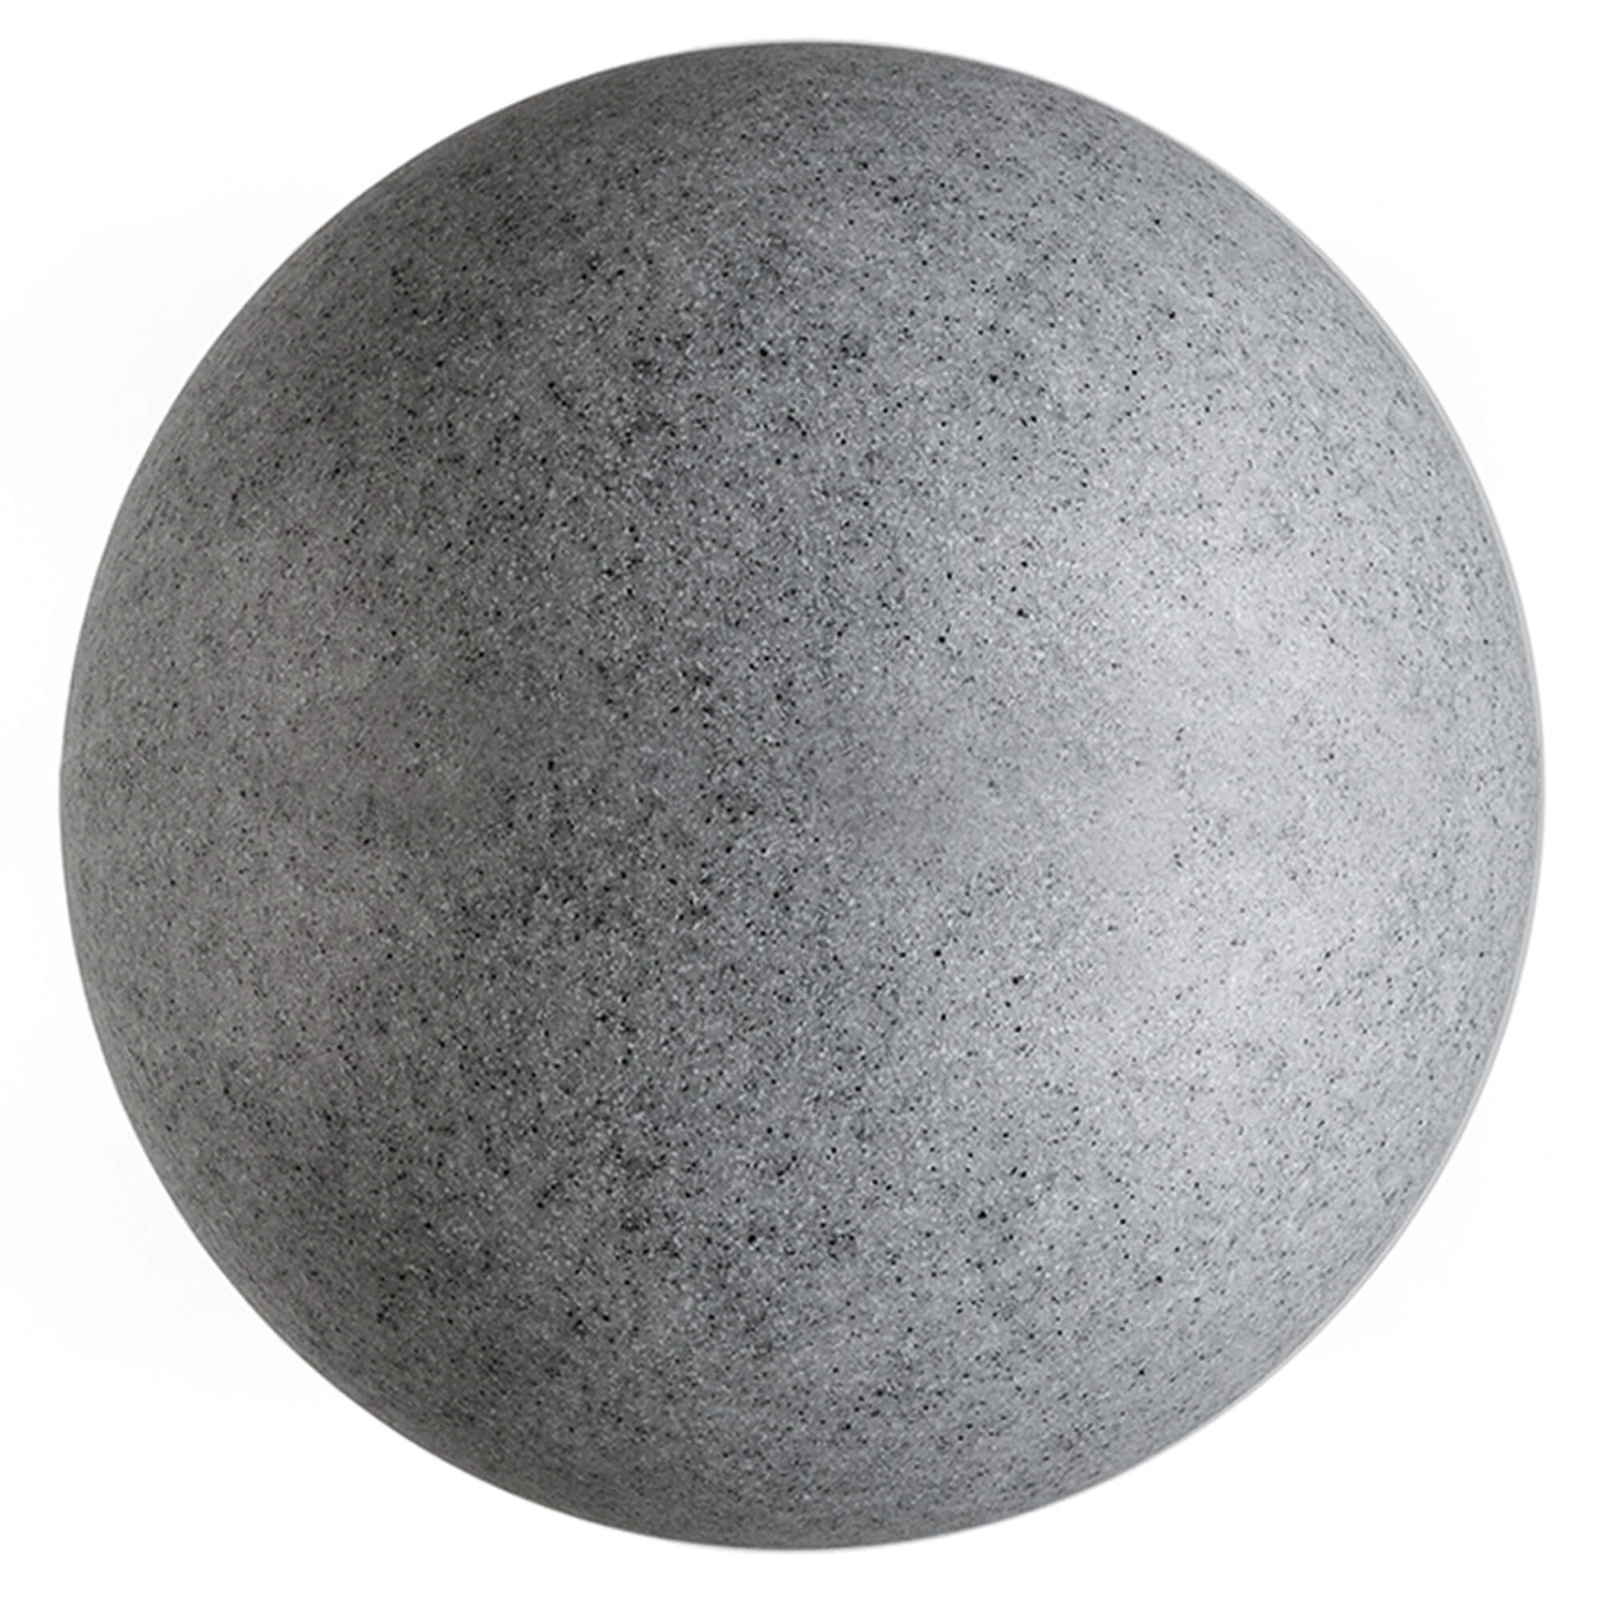 Lichtbol met grondspies, graniet, Ø 56cm